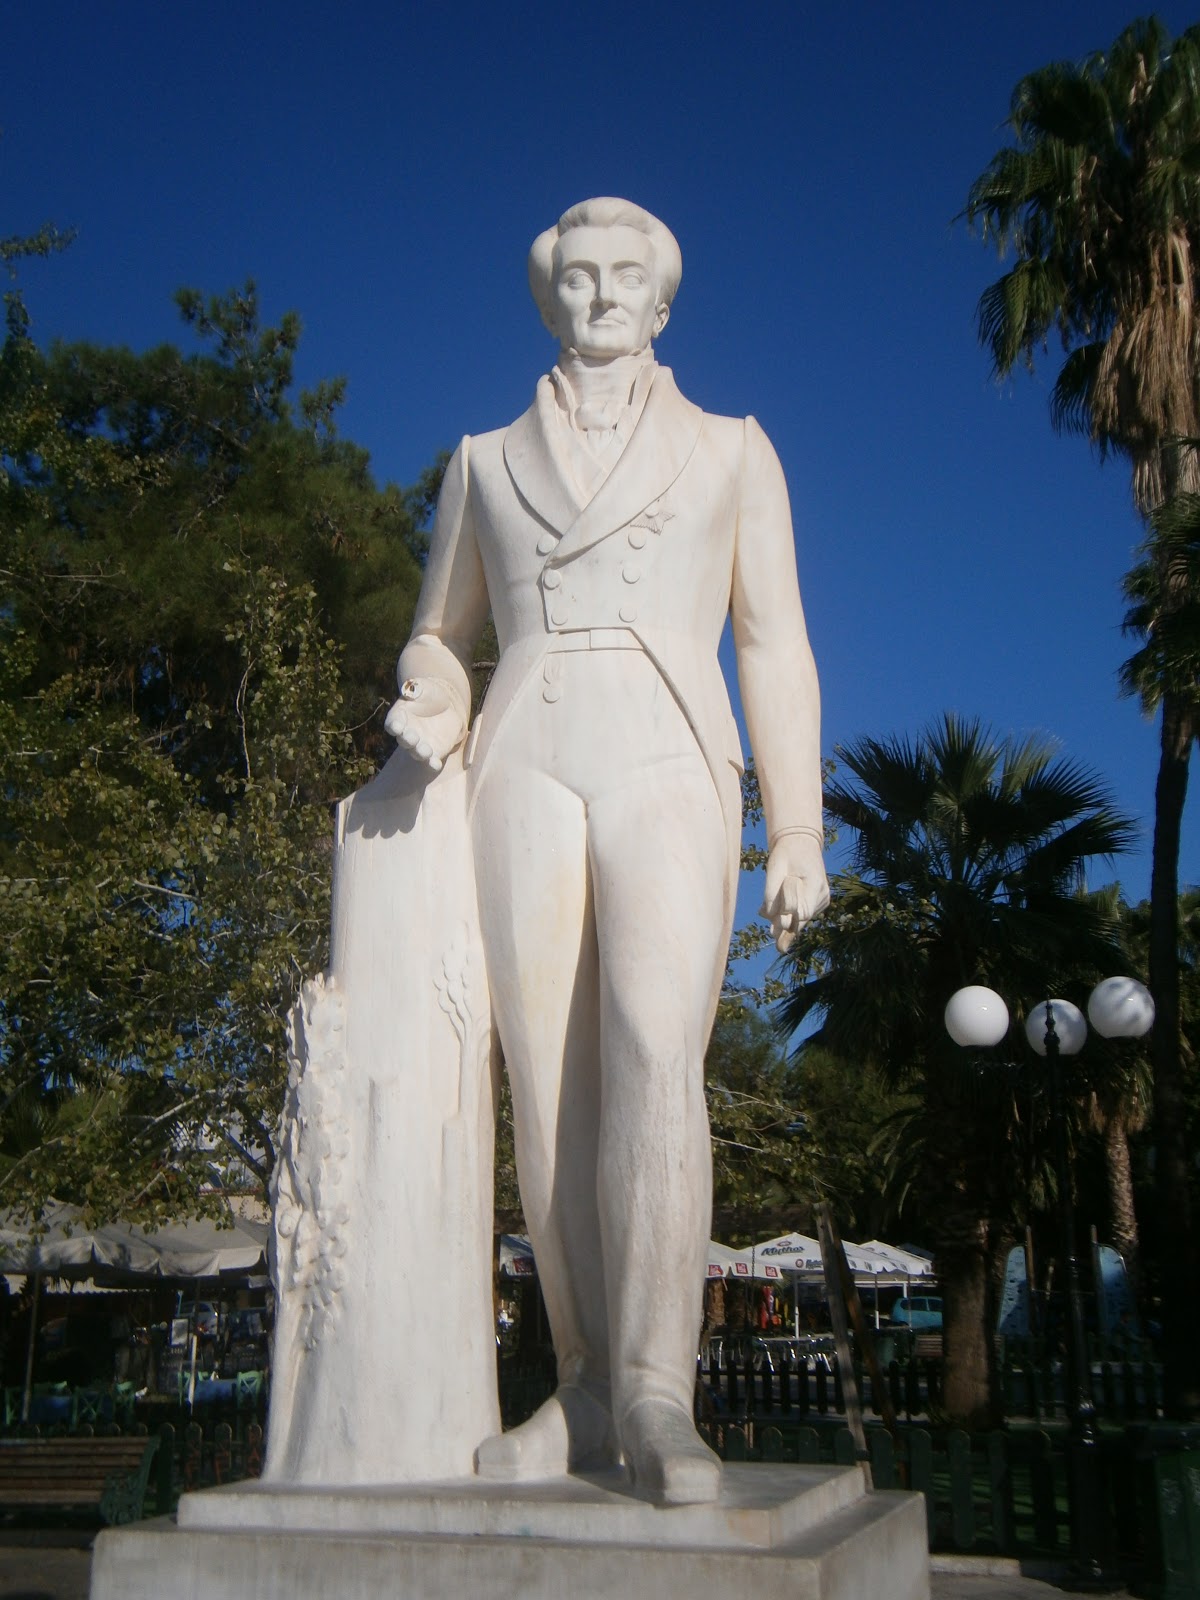 Ναύπλιο: Βανδάλισαν για πολλοστή φορά το άγαλμα του Καποδίστρια - Ειδήσεις  - νέα - Το Βήμα Online